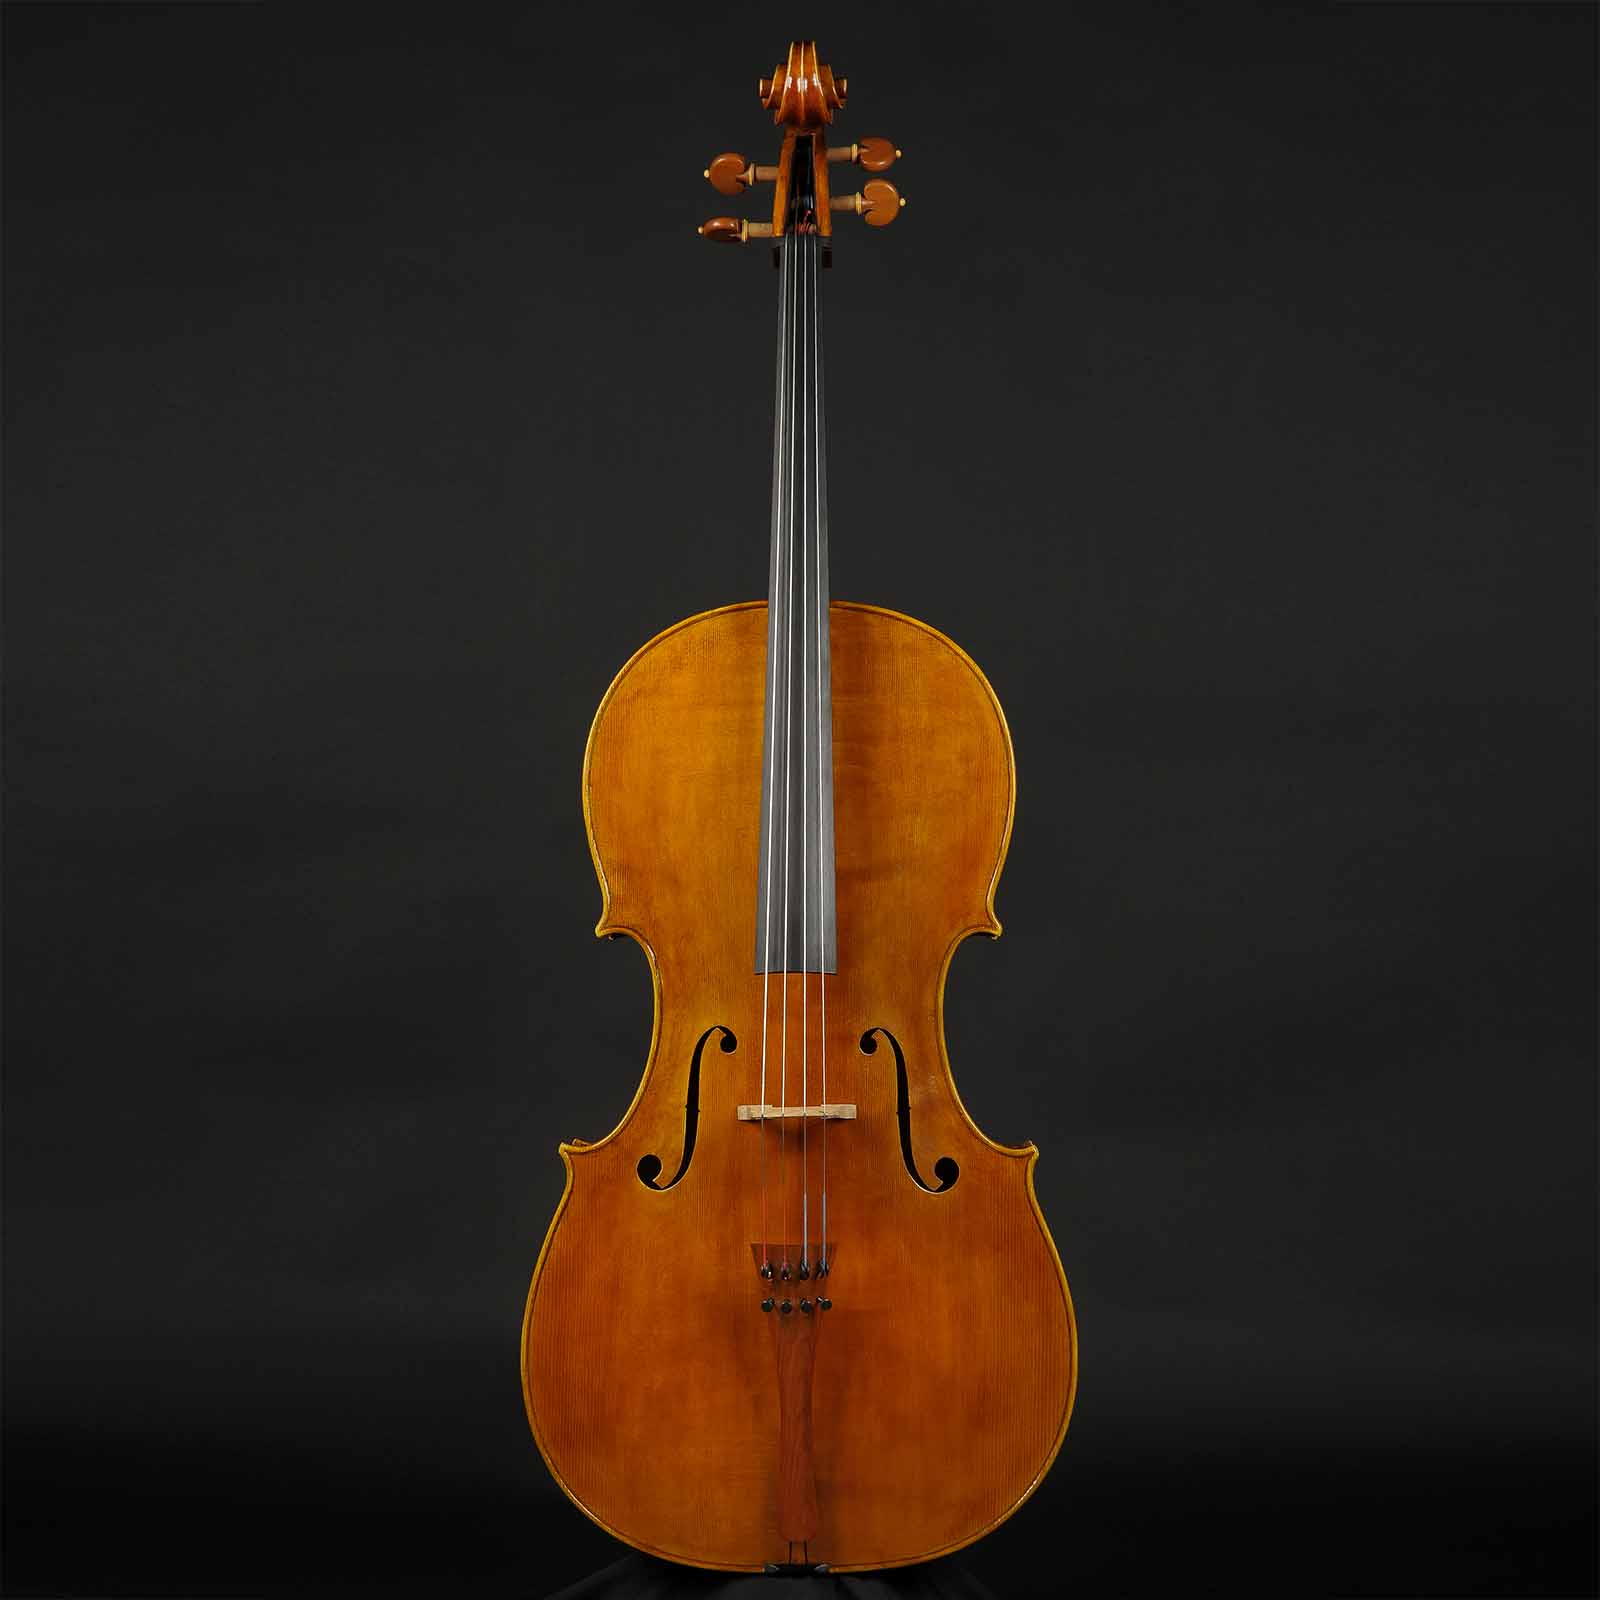 Antonio Stradivari Cremona 1712 “Tullo Ostilio“ - Image 1